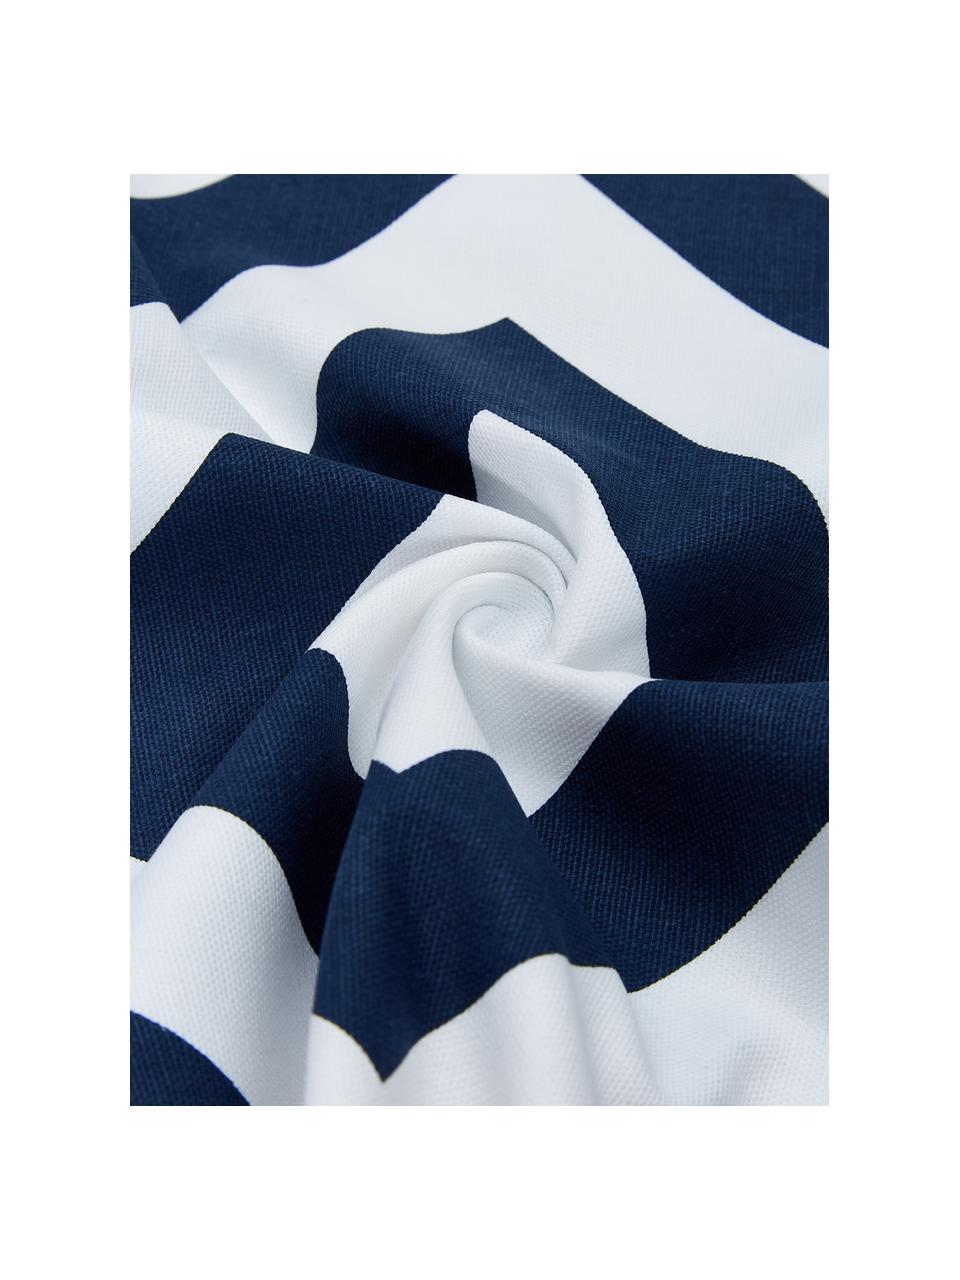 Kissenhülle Sera mit grafischem Muster, 100% Baumwolle, Weiß, Dunkelblau, B 45 x L 45 cm